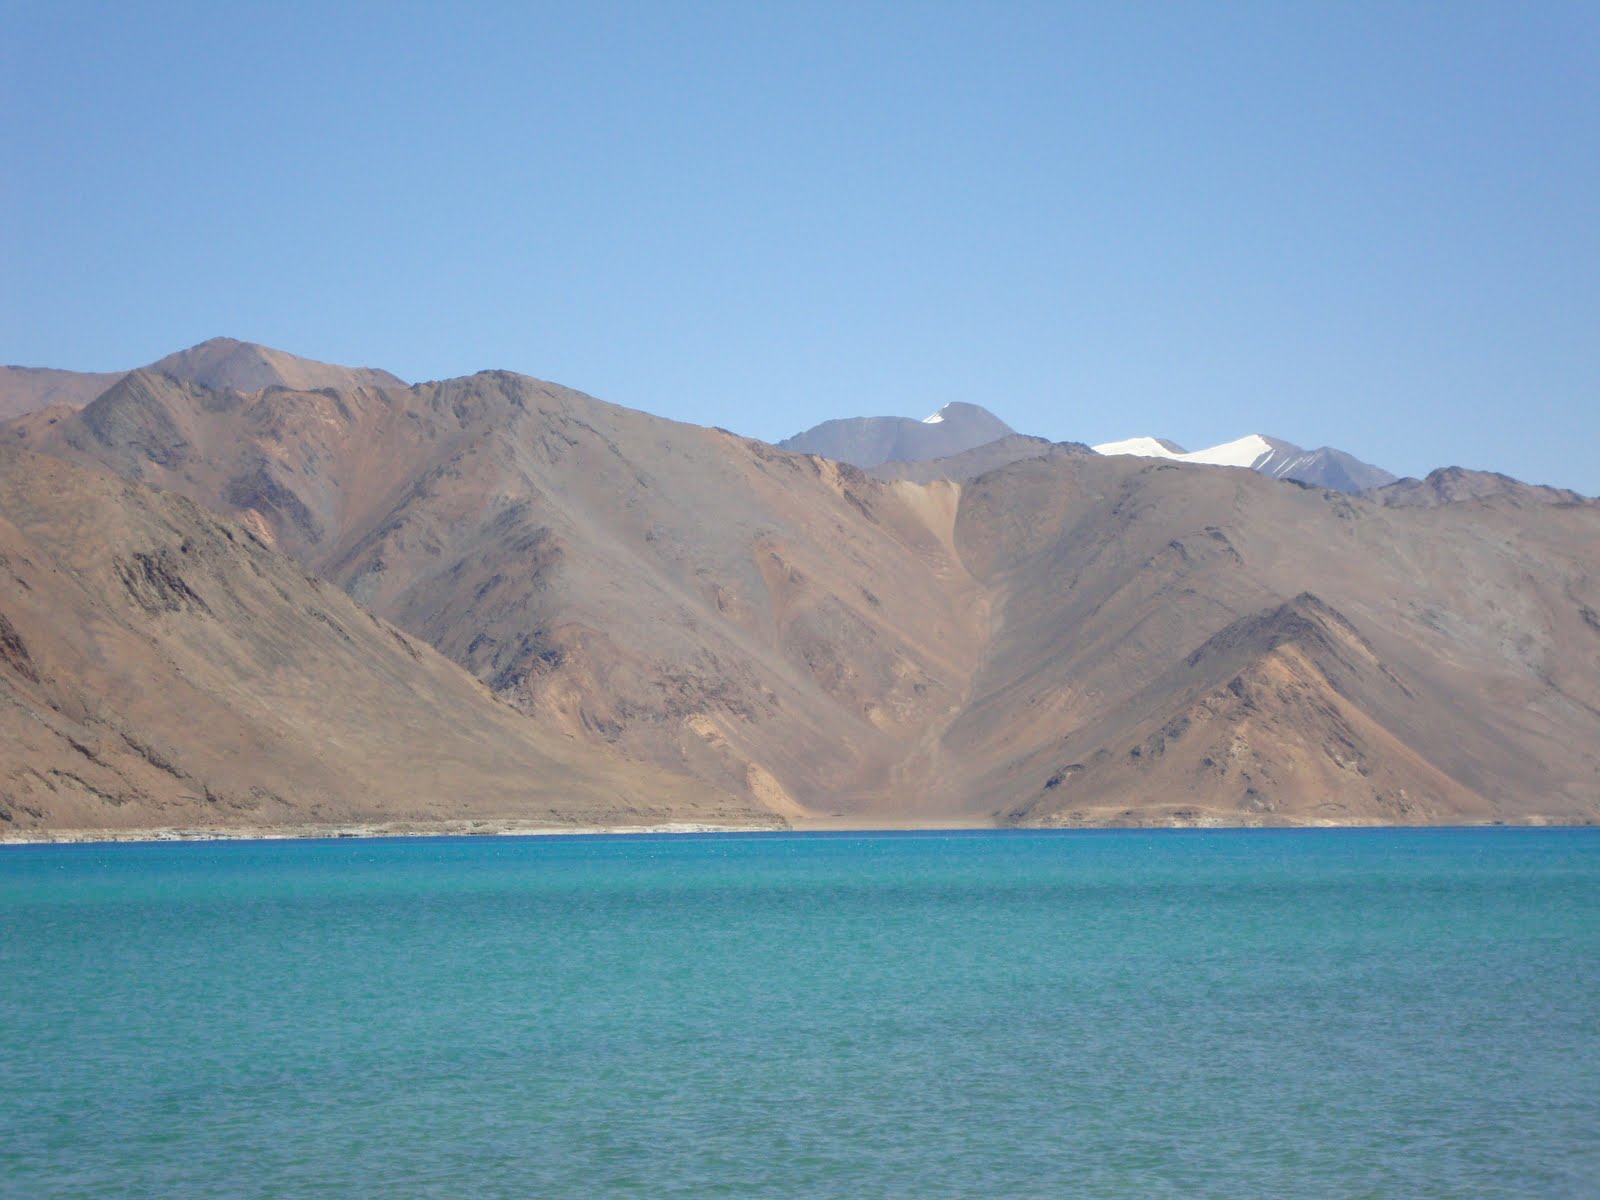 Lake_Tso_Mirori_India_Ladhak_Tibet(China_Occupied_Tibet)_Border